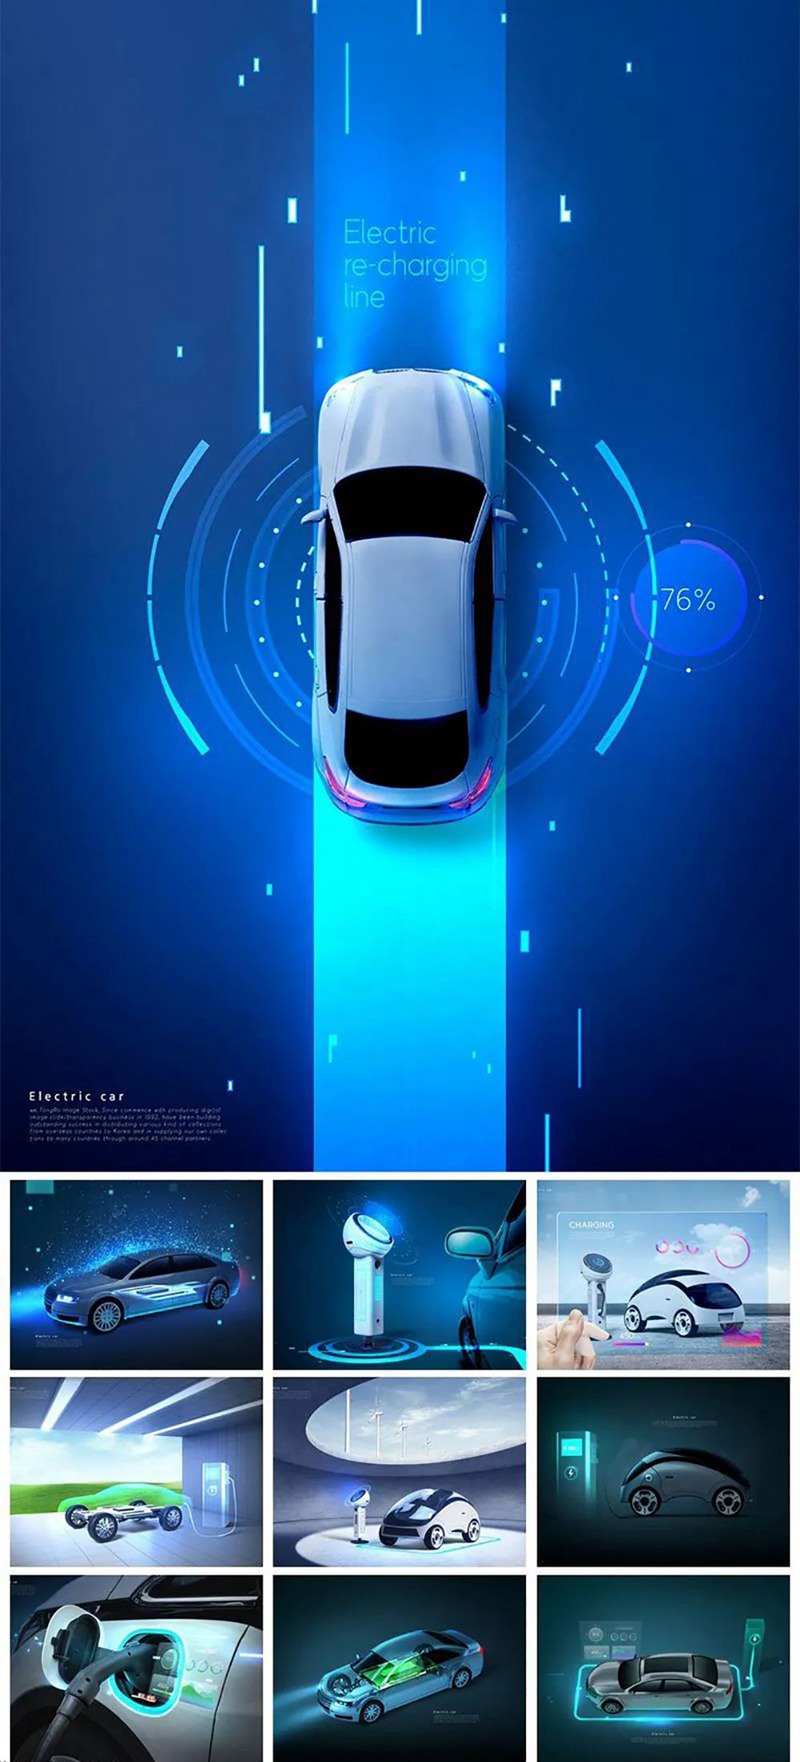 10款新能源电动汽车环保科技海报设计PSD模板素材 设计素材 第1张